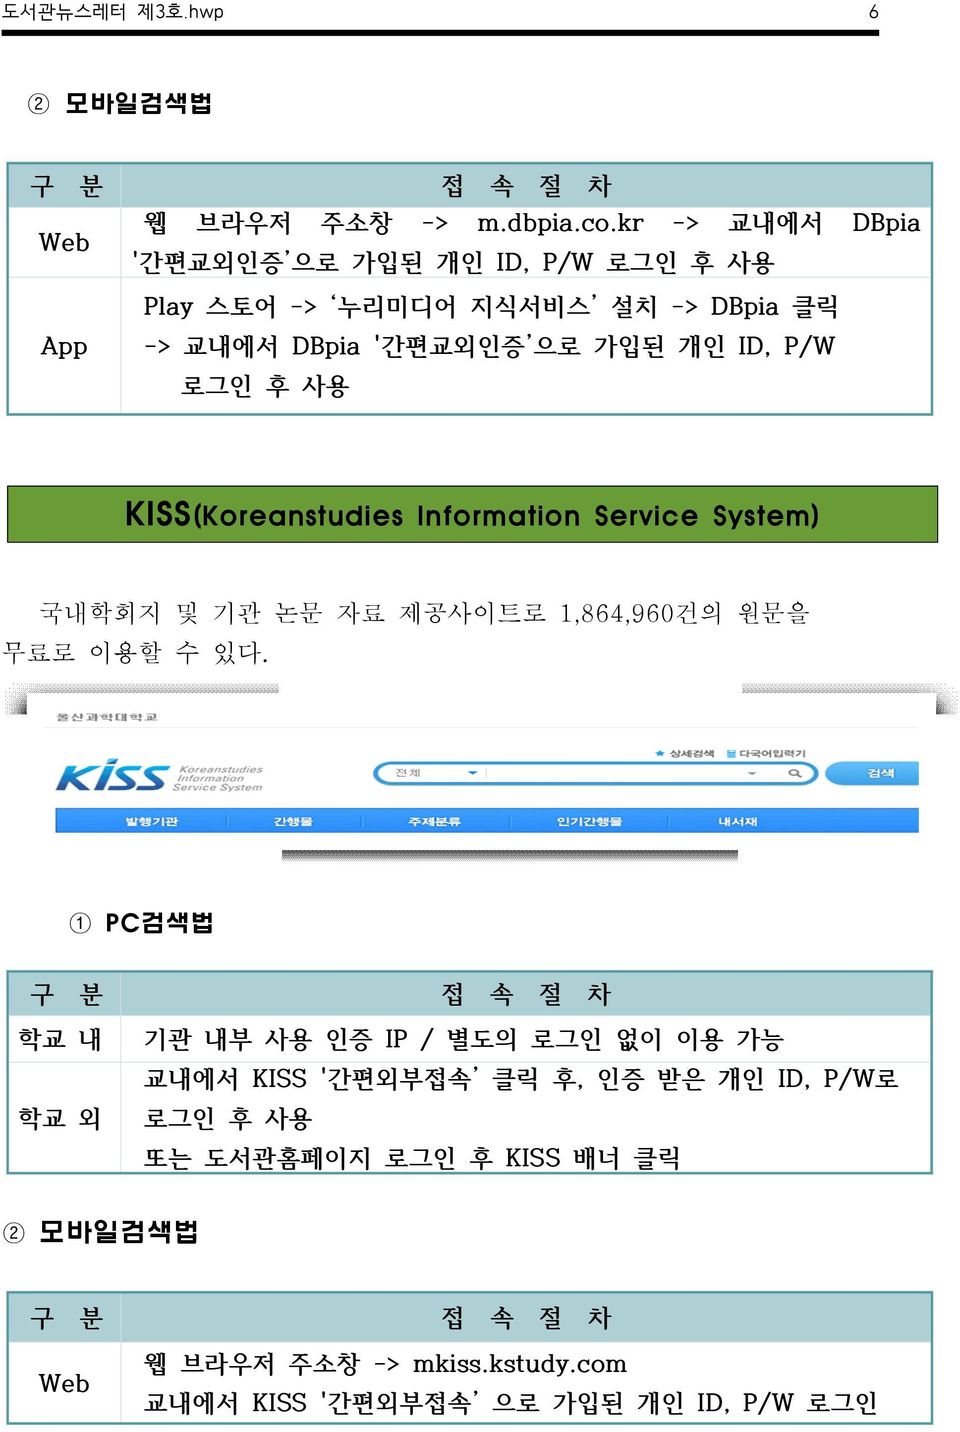 사용 KISS(Koreanstudies Information Service System) 국내학회지 및 기관 논문 자료 제공사이트로 1,864,960건의 원문을 무료로 이용할 수 있다.